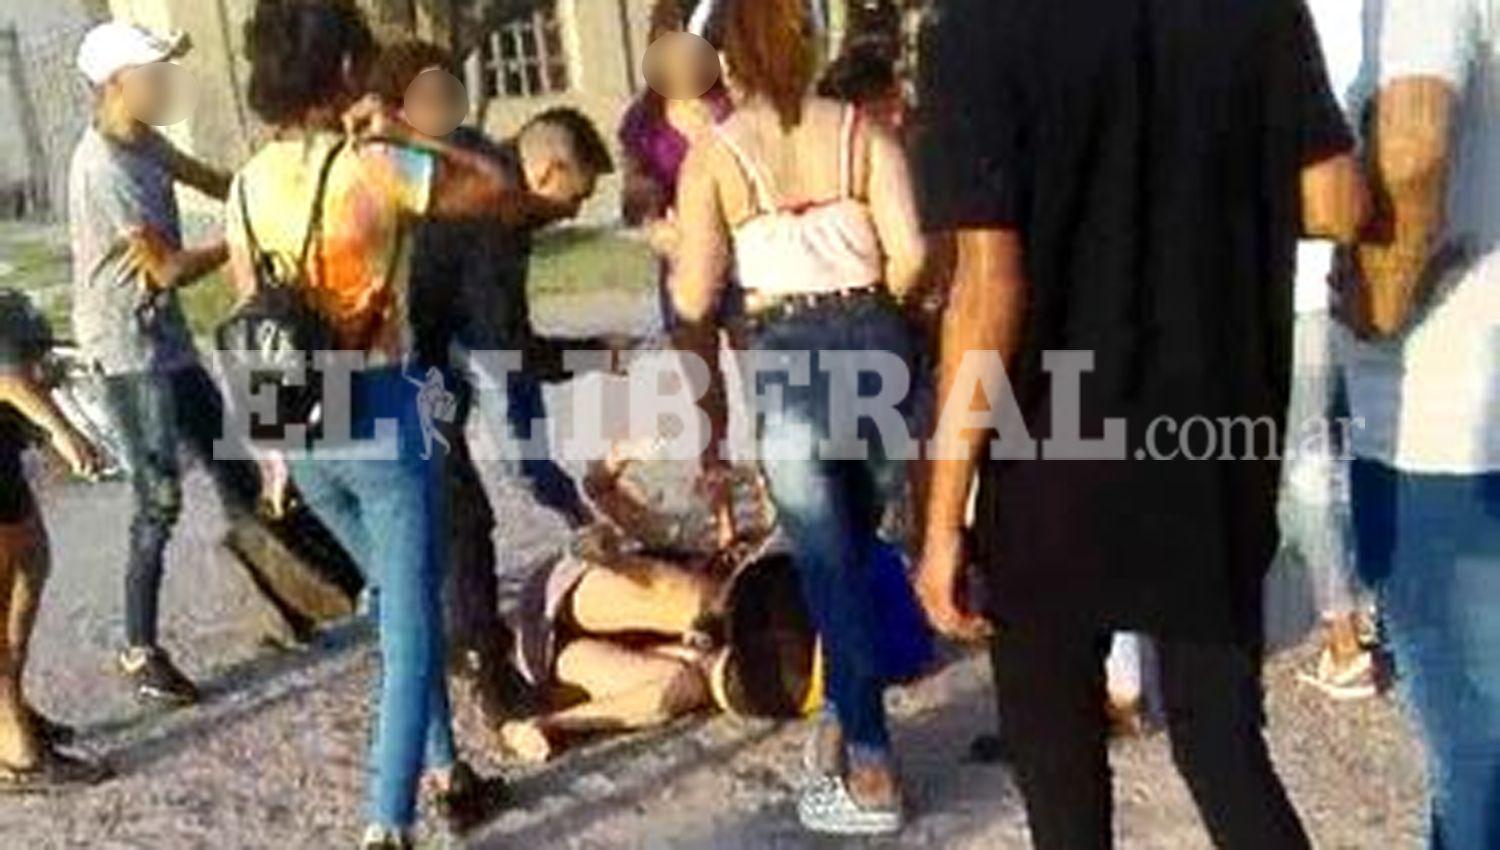 Los incidentes se registraron a escasos metros de un boloiche de Añatuya